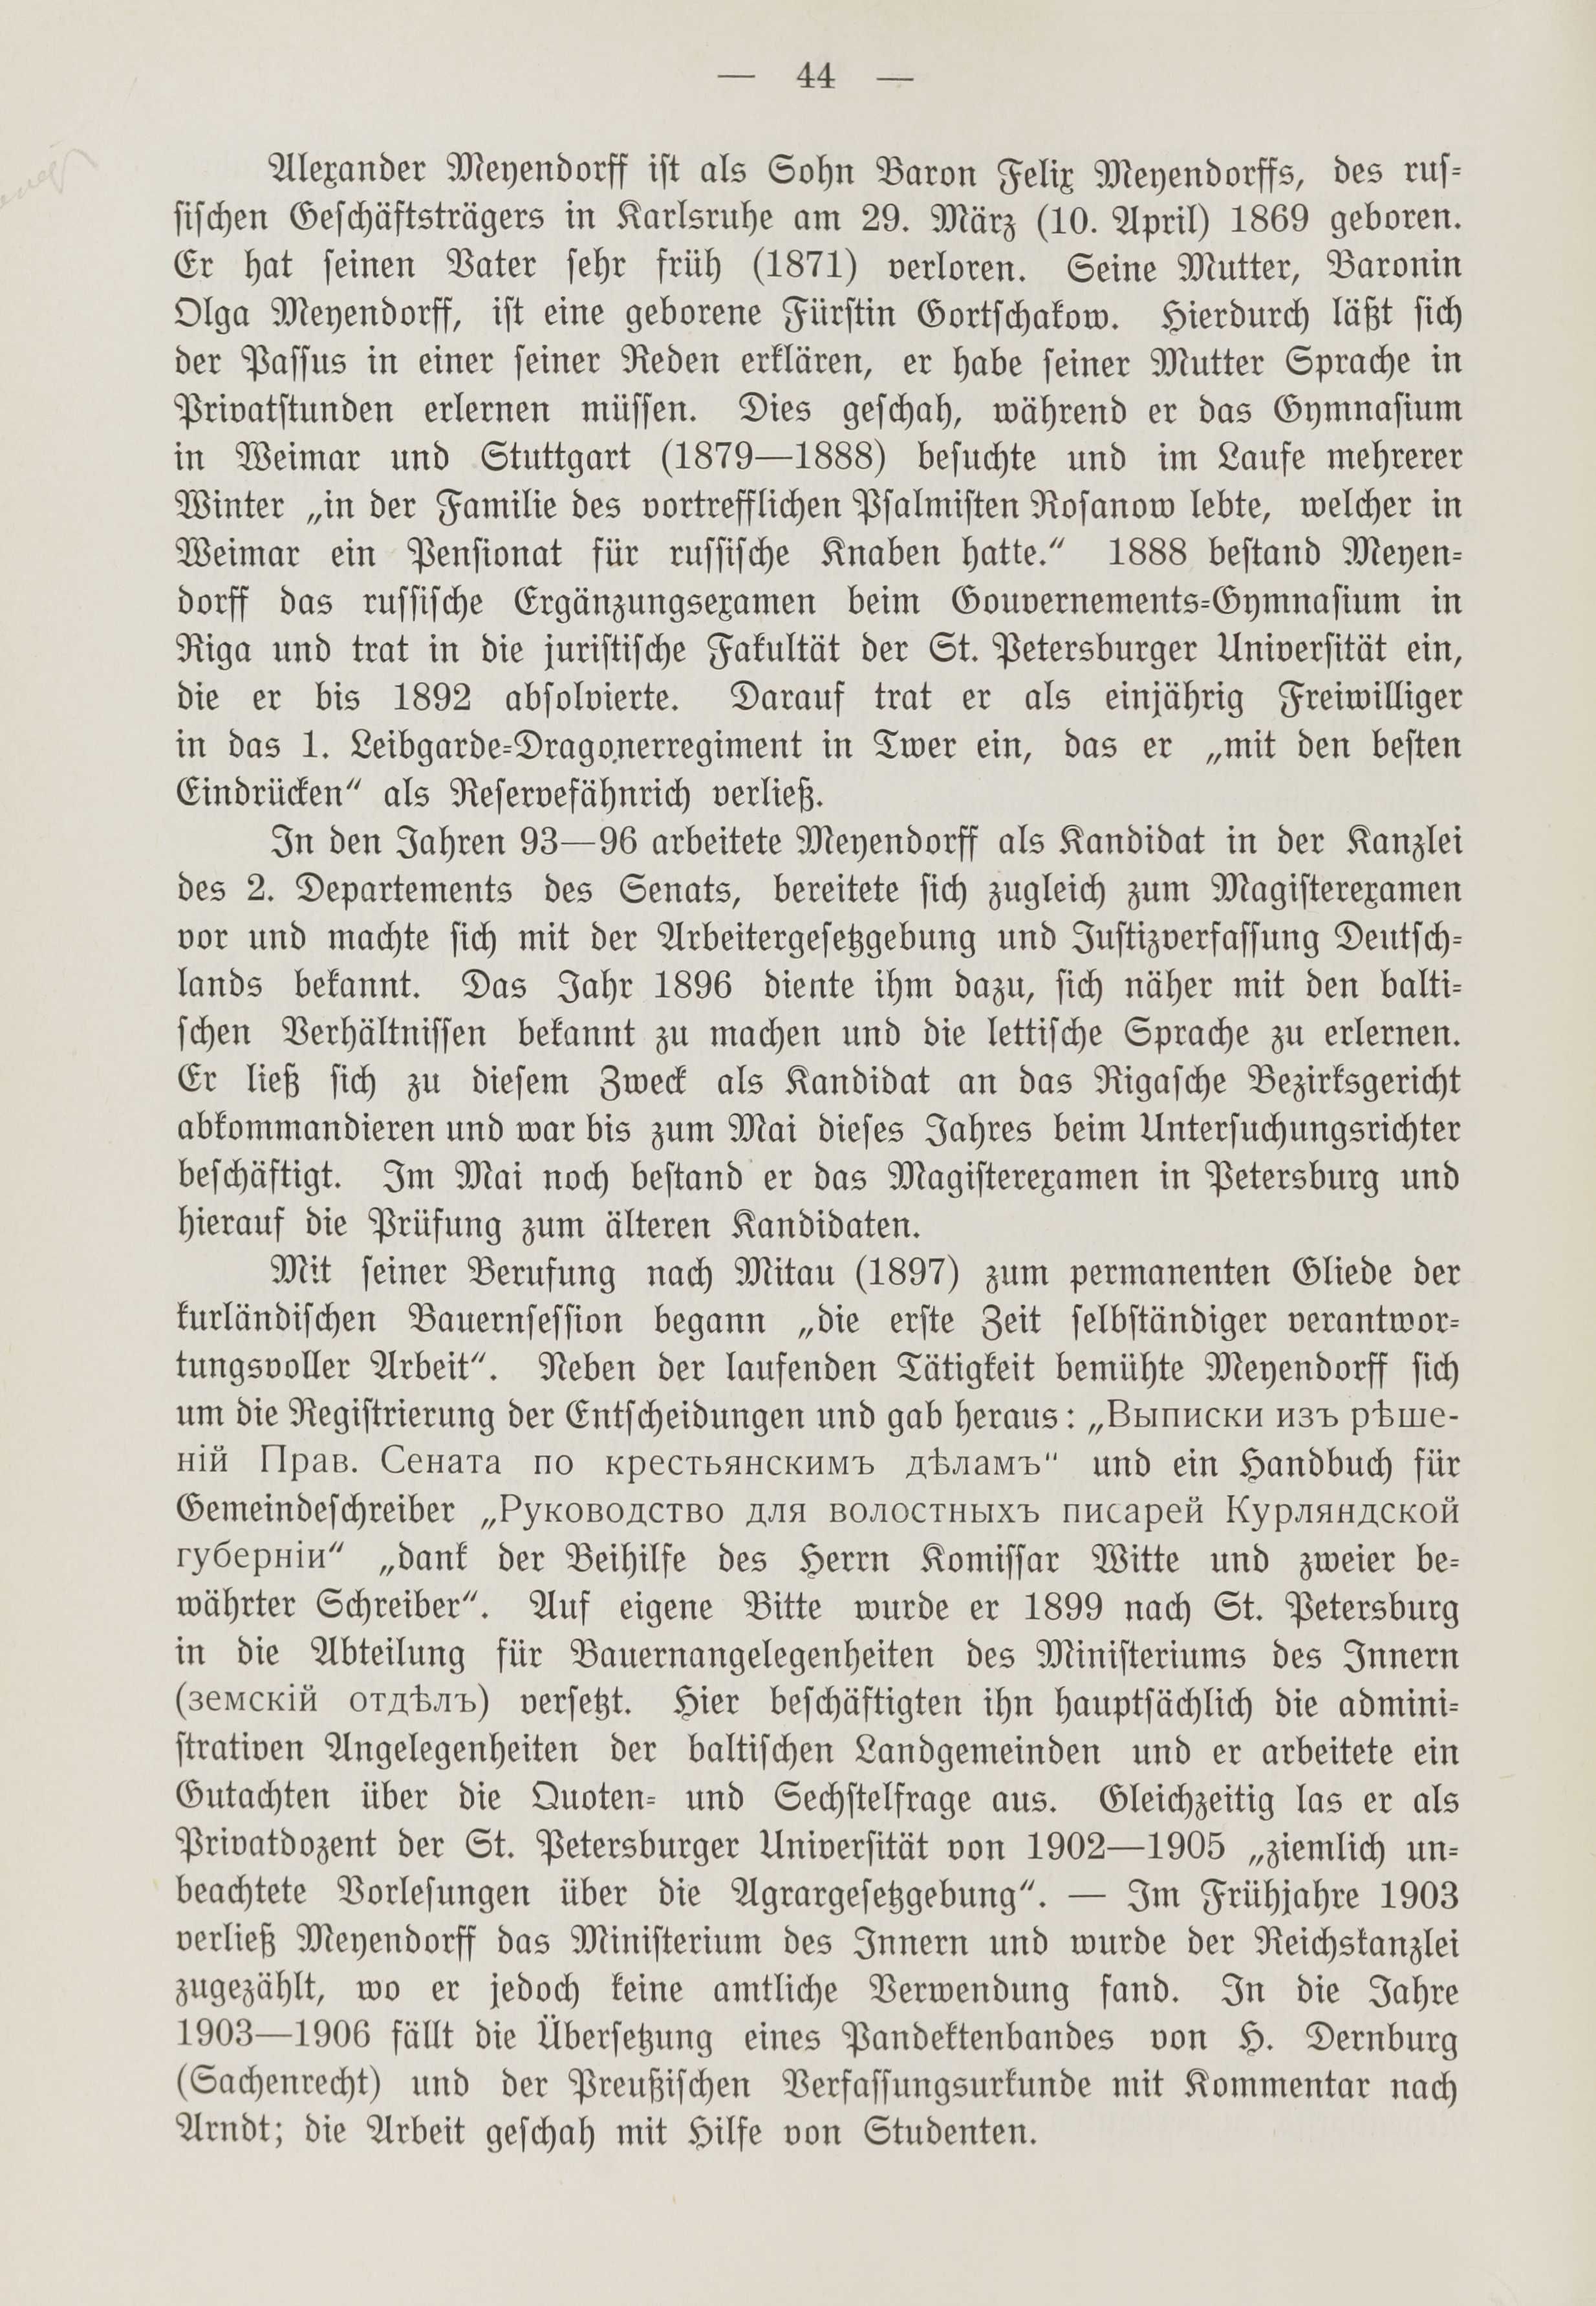 Deutsche Monatsschrift für Russland [1] (1912) | 51. (44) Main body of text